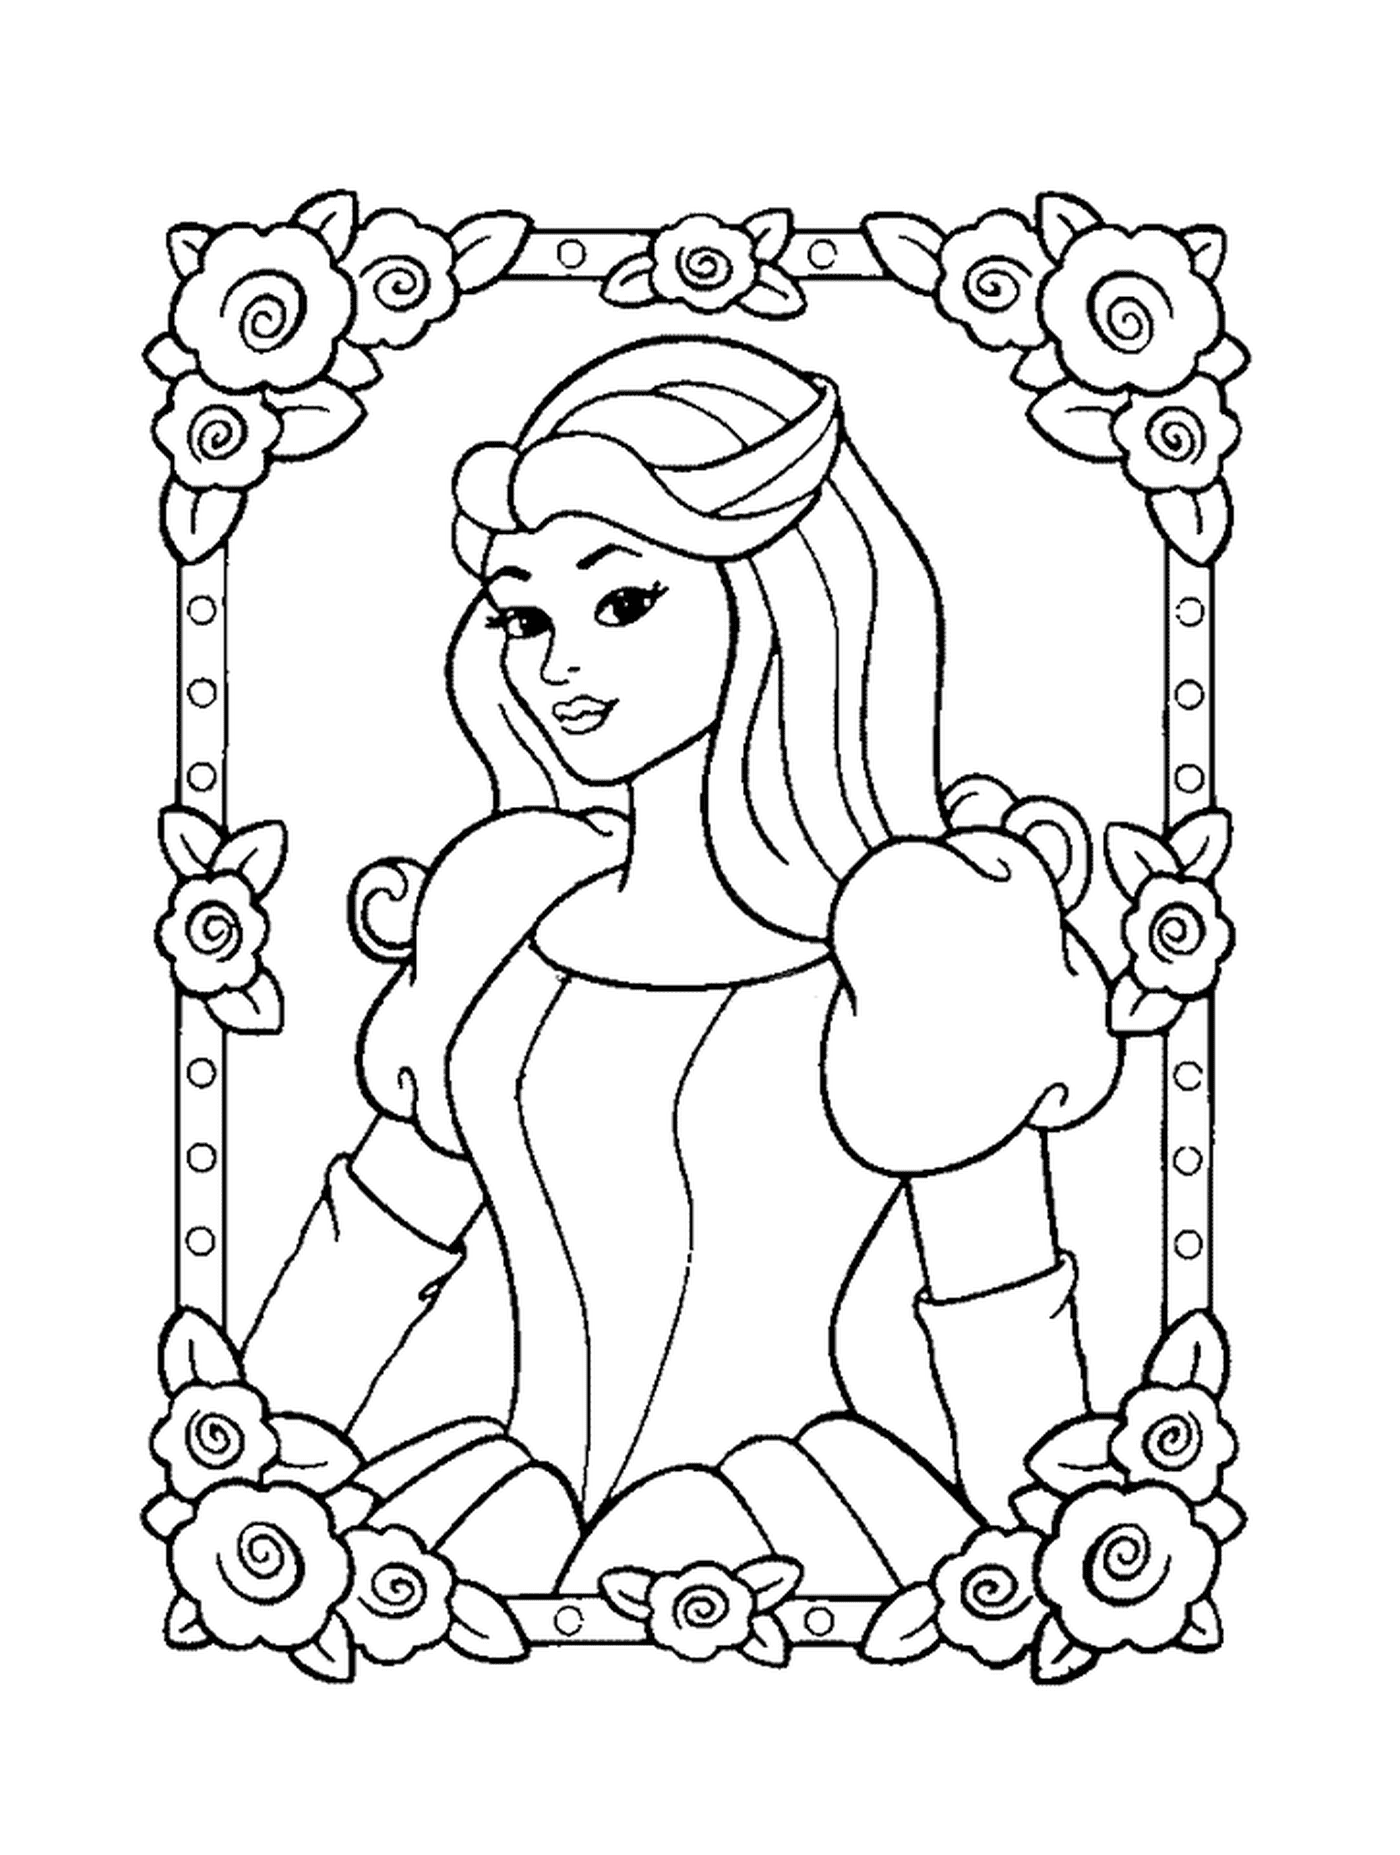  Princesa Disney, una mujer con un marco de flores a su alrededor 